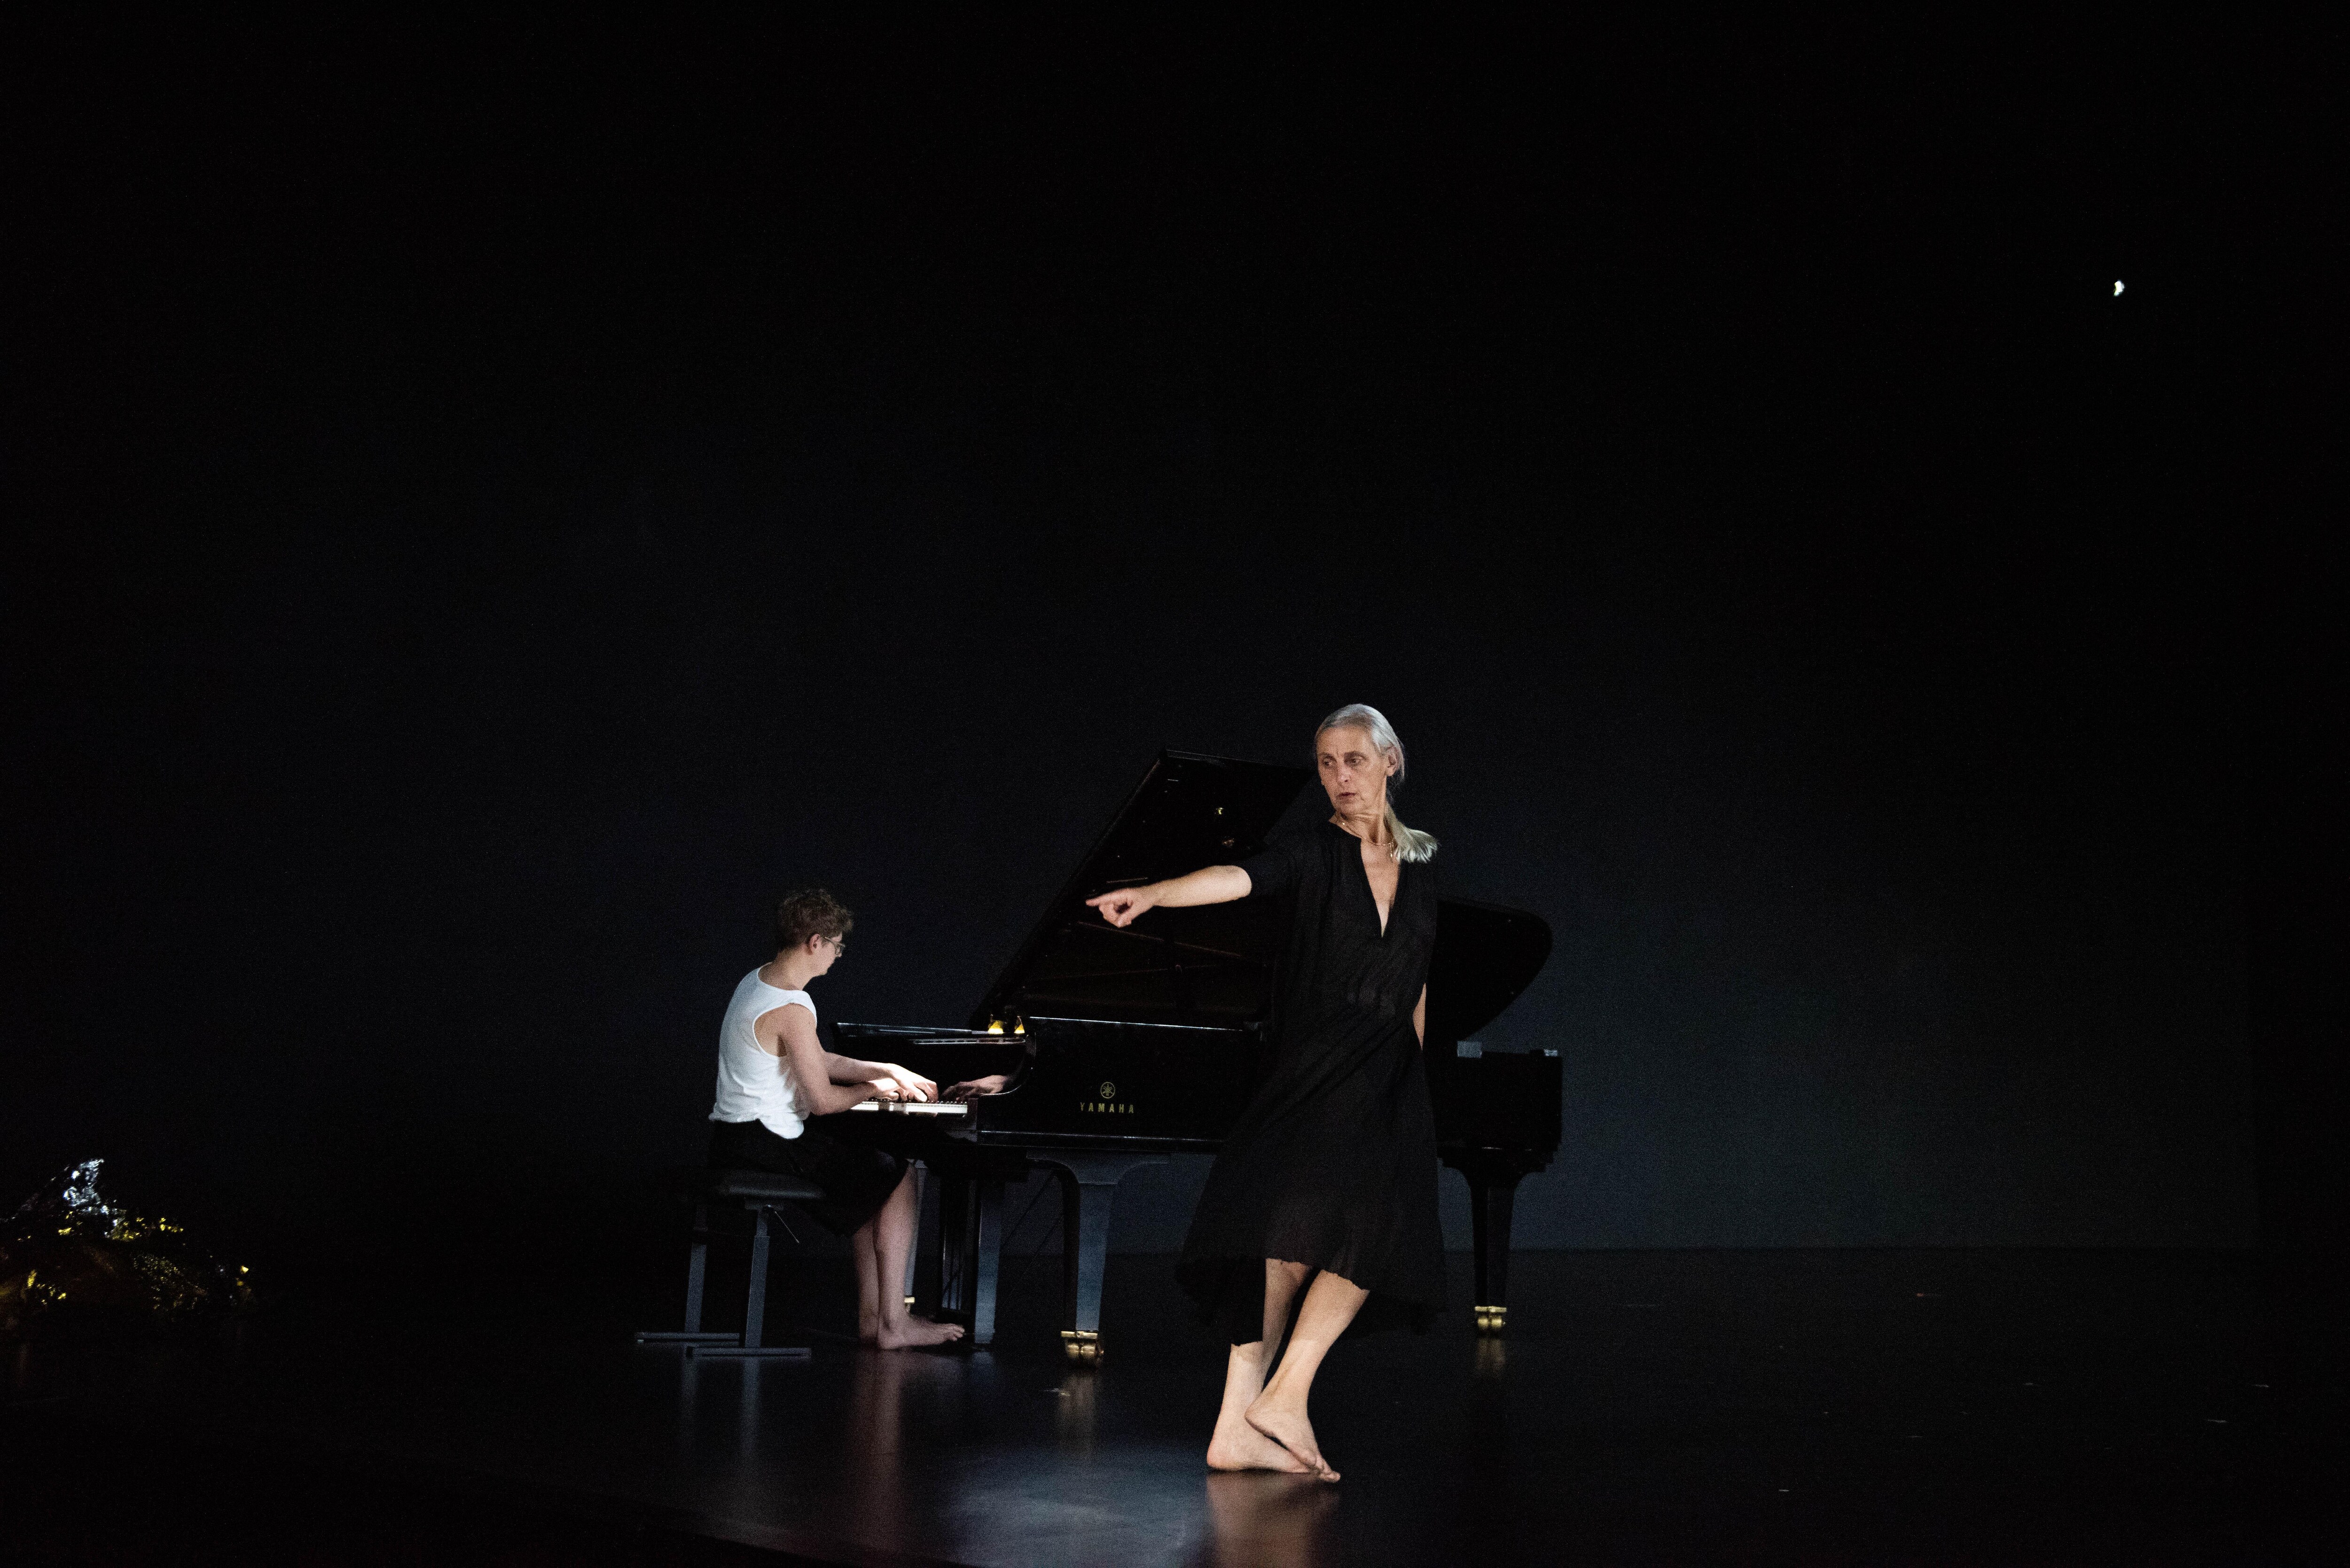 Sur une scène noire, une danseuse vêtue d’une robe noire avec un profond col en V pointe du doigt vers la gauche, ses pieds nus la menant dans la direction opposée avec, derrière elle, un jeune homme jouant du piano.